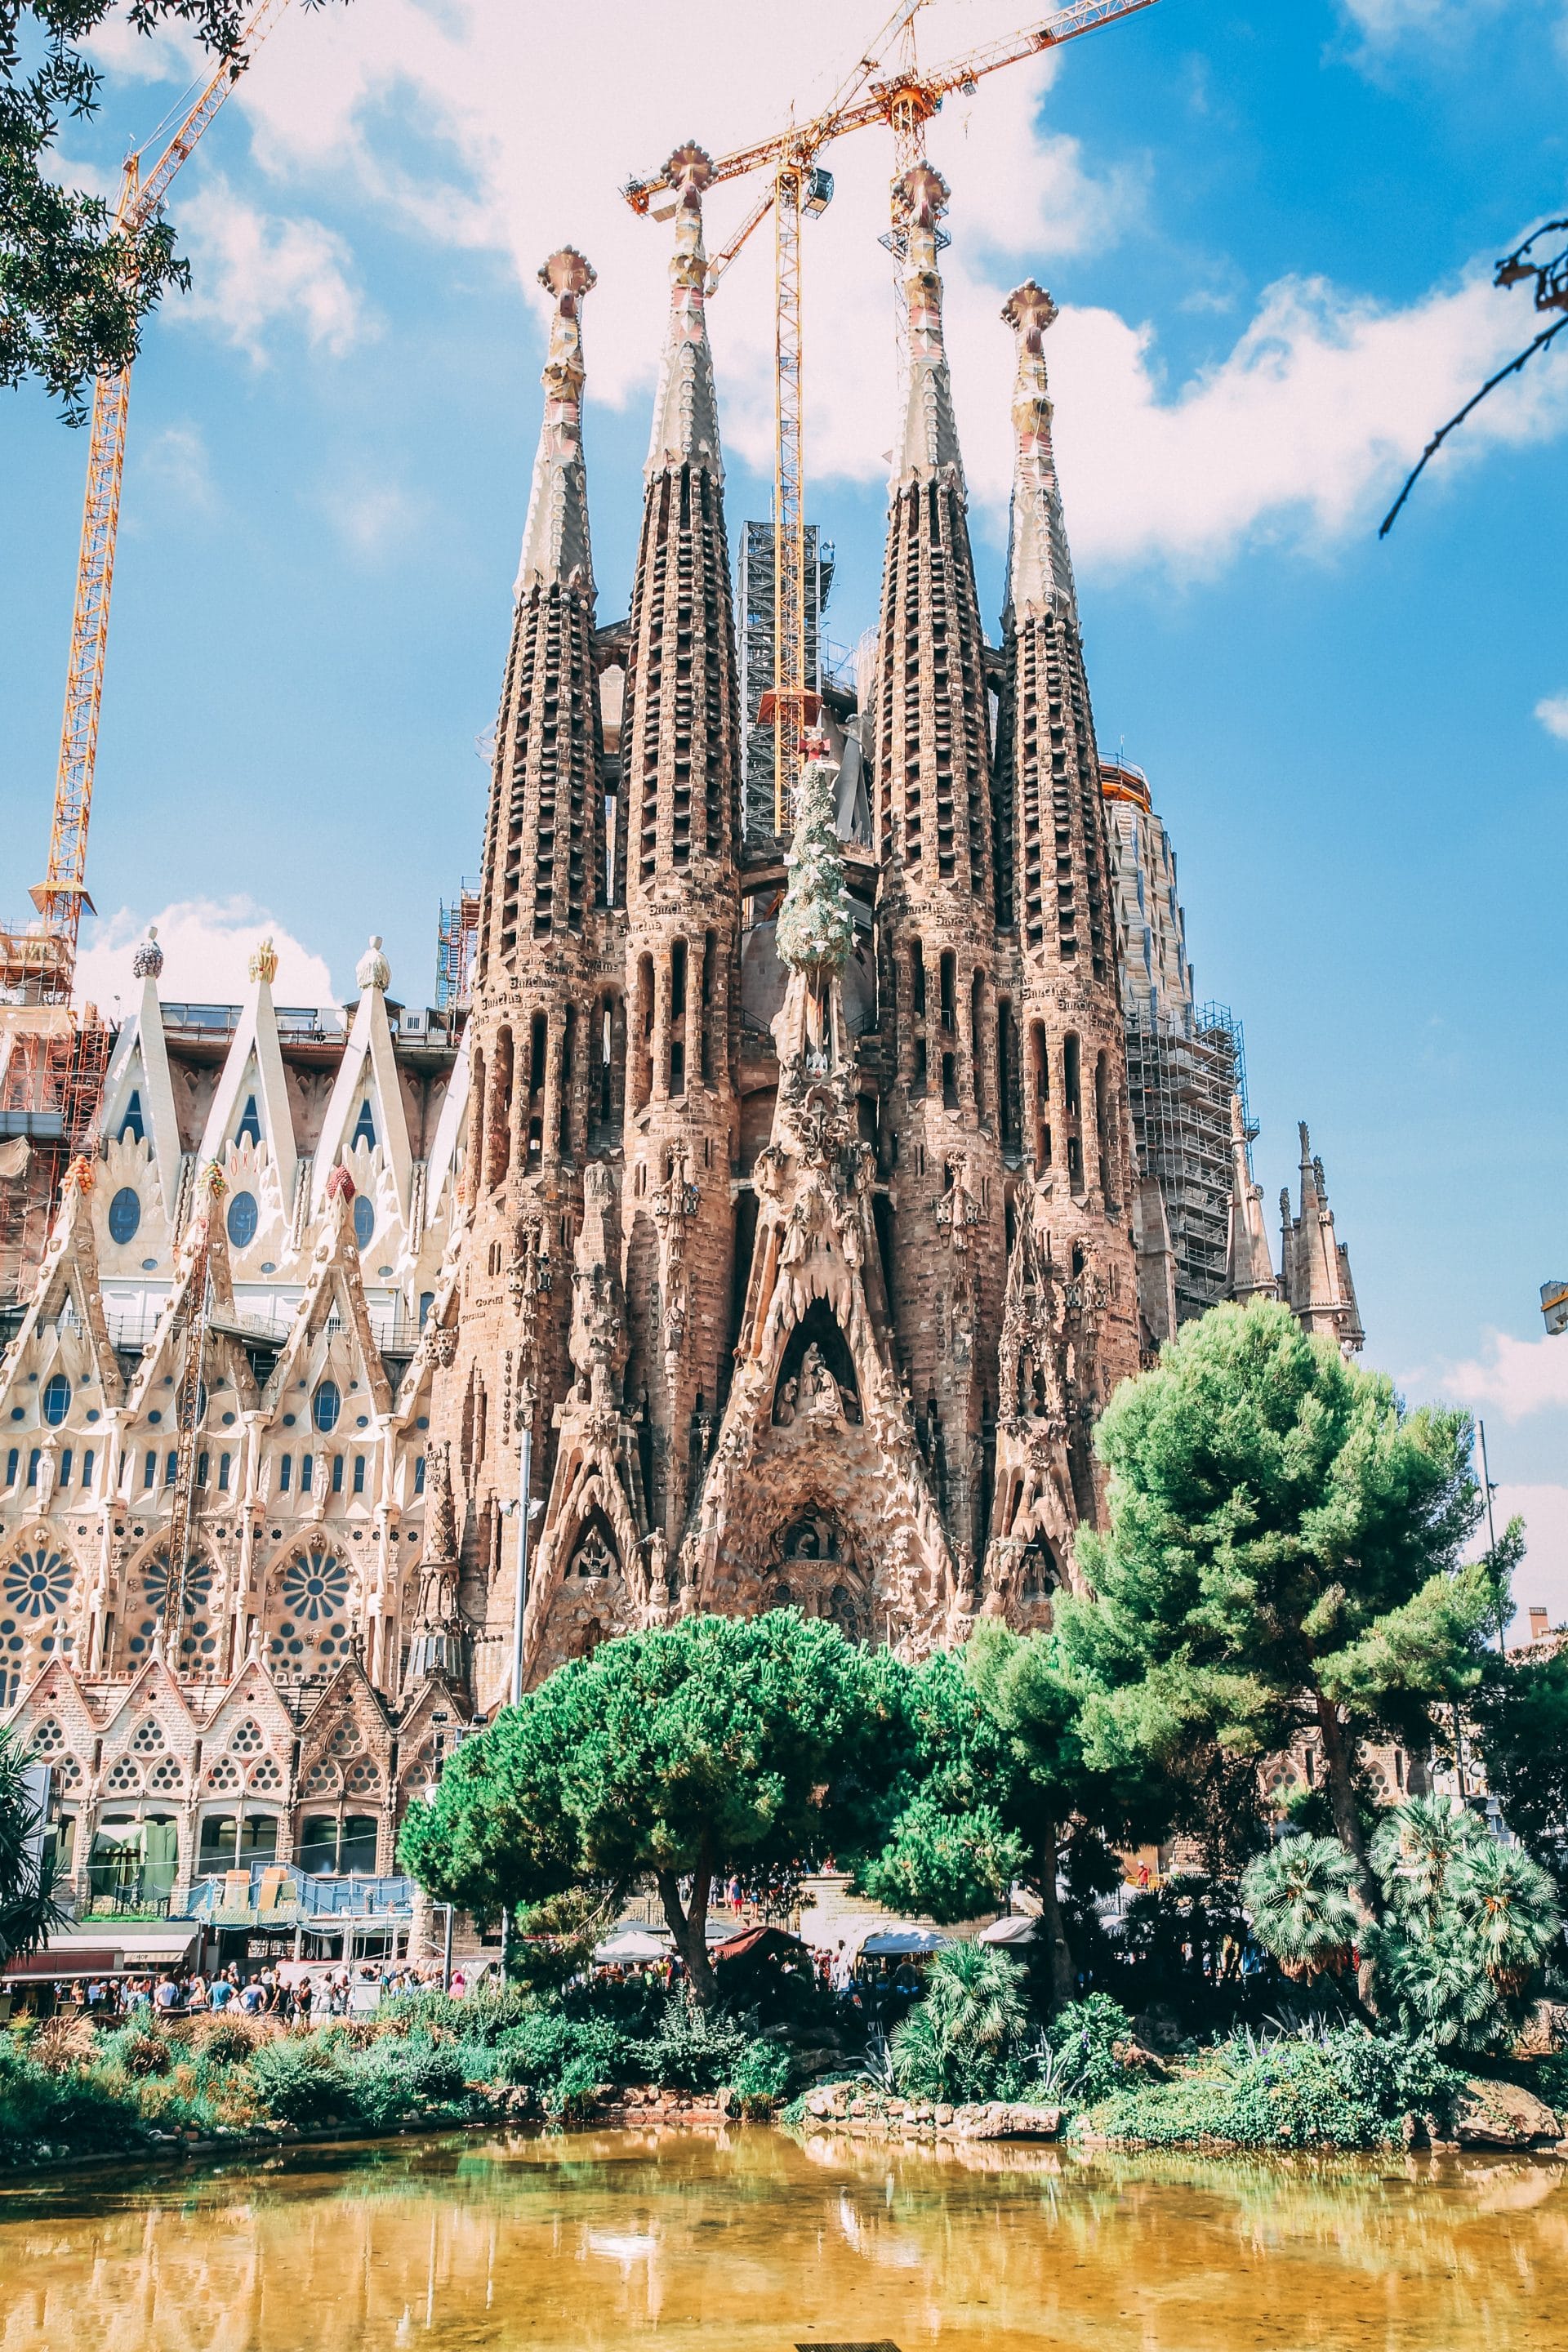 Les 5 endroits les plus photogéniques de Barcelone - avec les emplacements exacts!